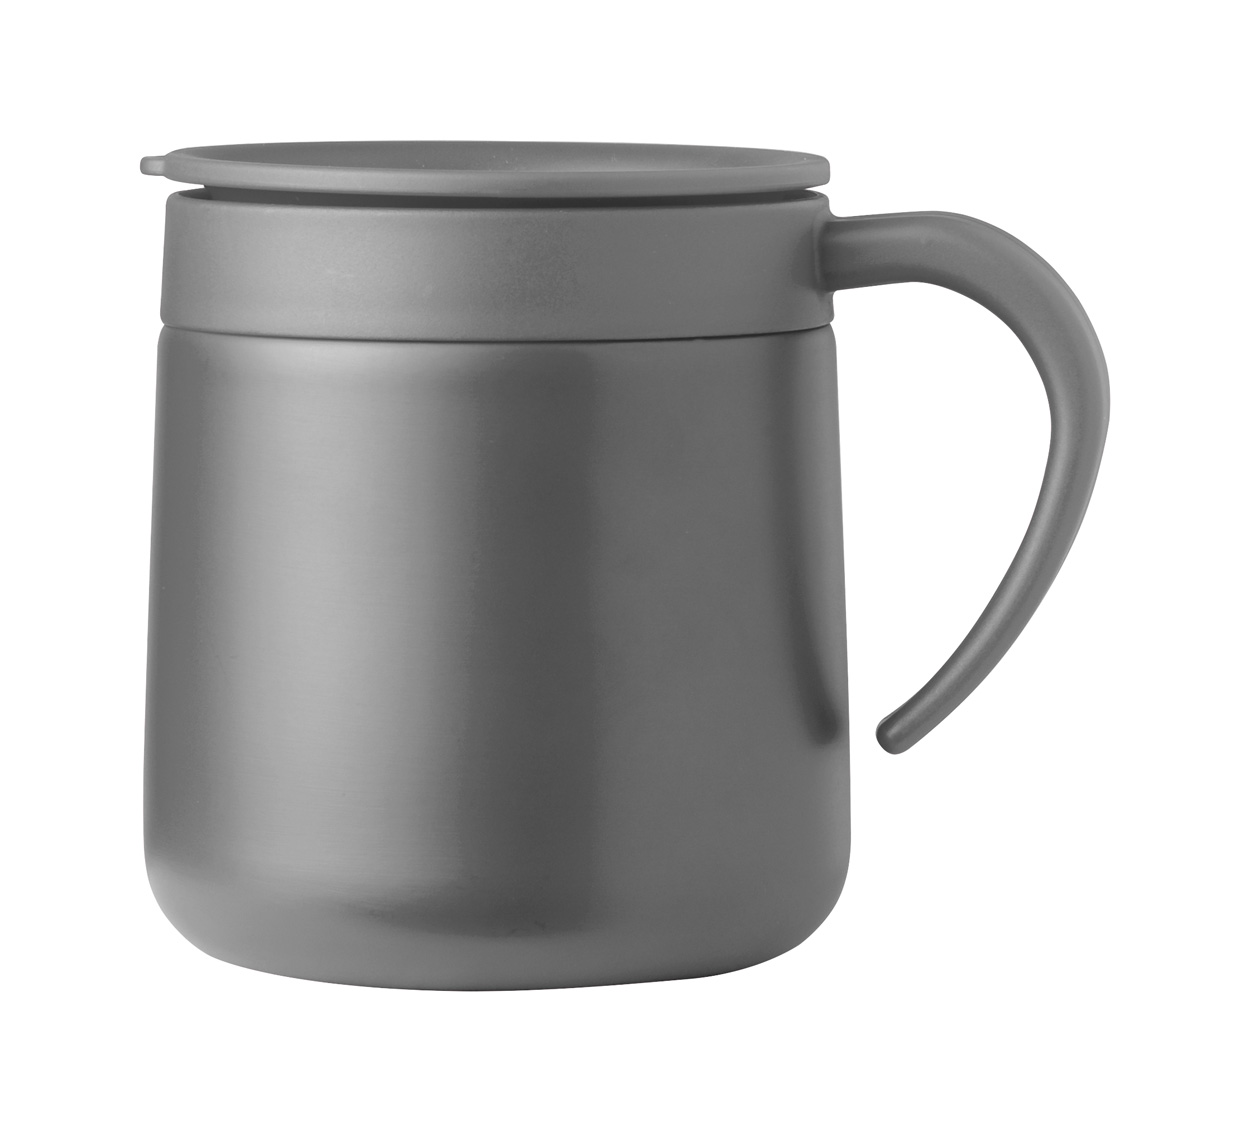 Bokat thermo mug - Grau